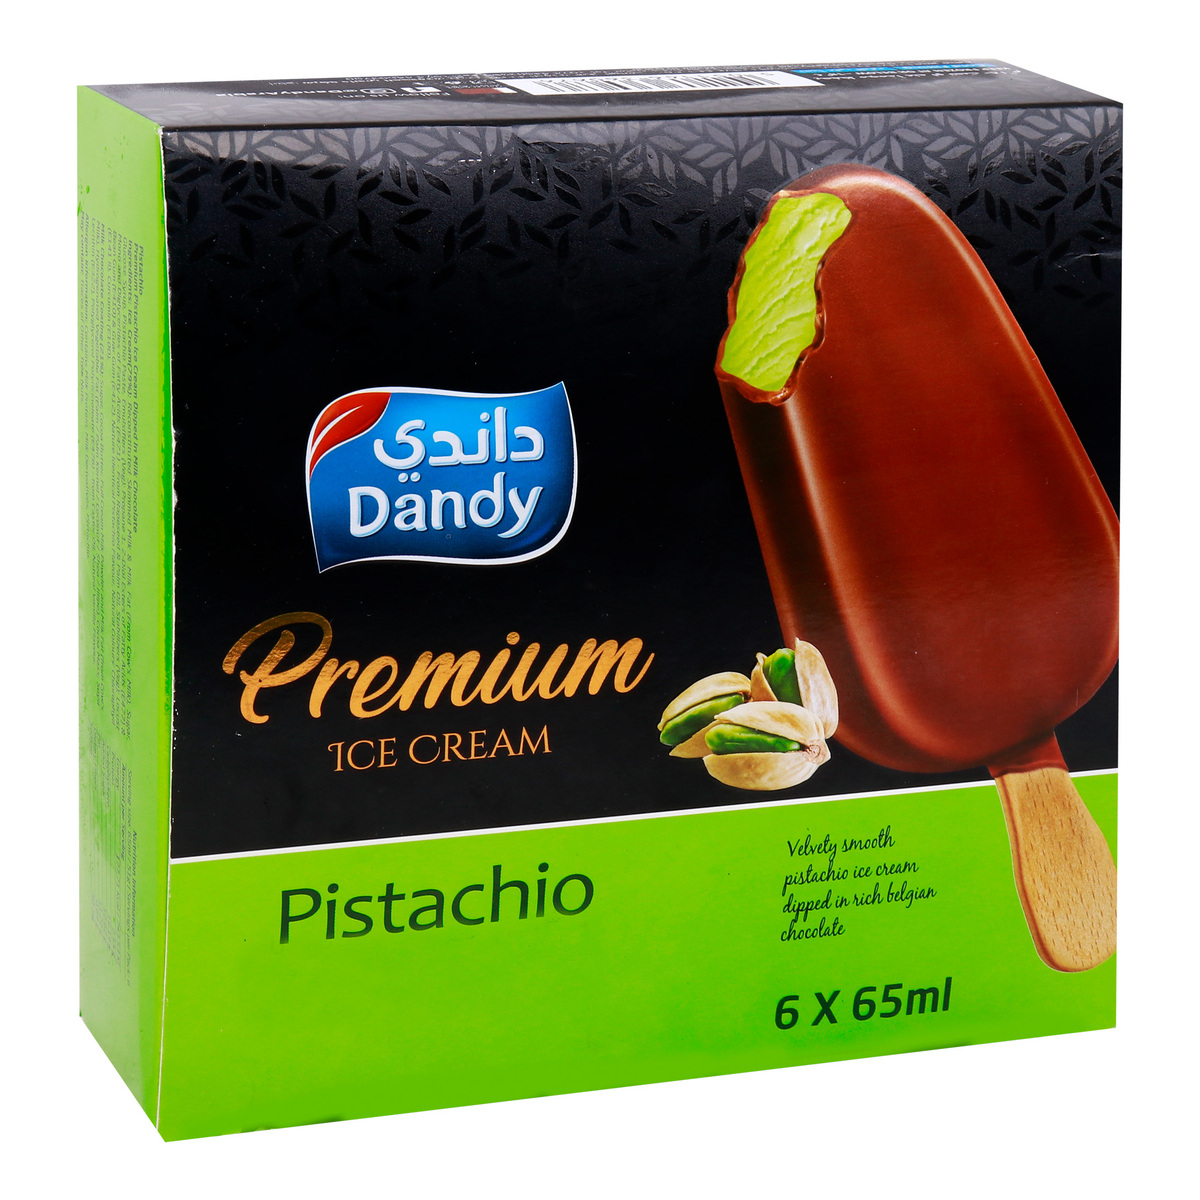 Dandy Pistachio Premium Ice Cream Stick 6 x 65 ml